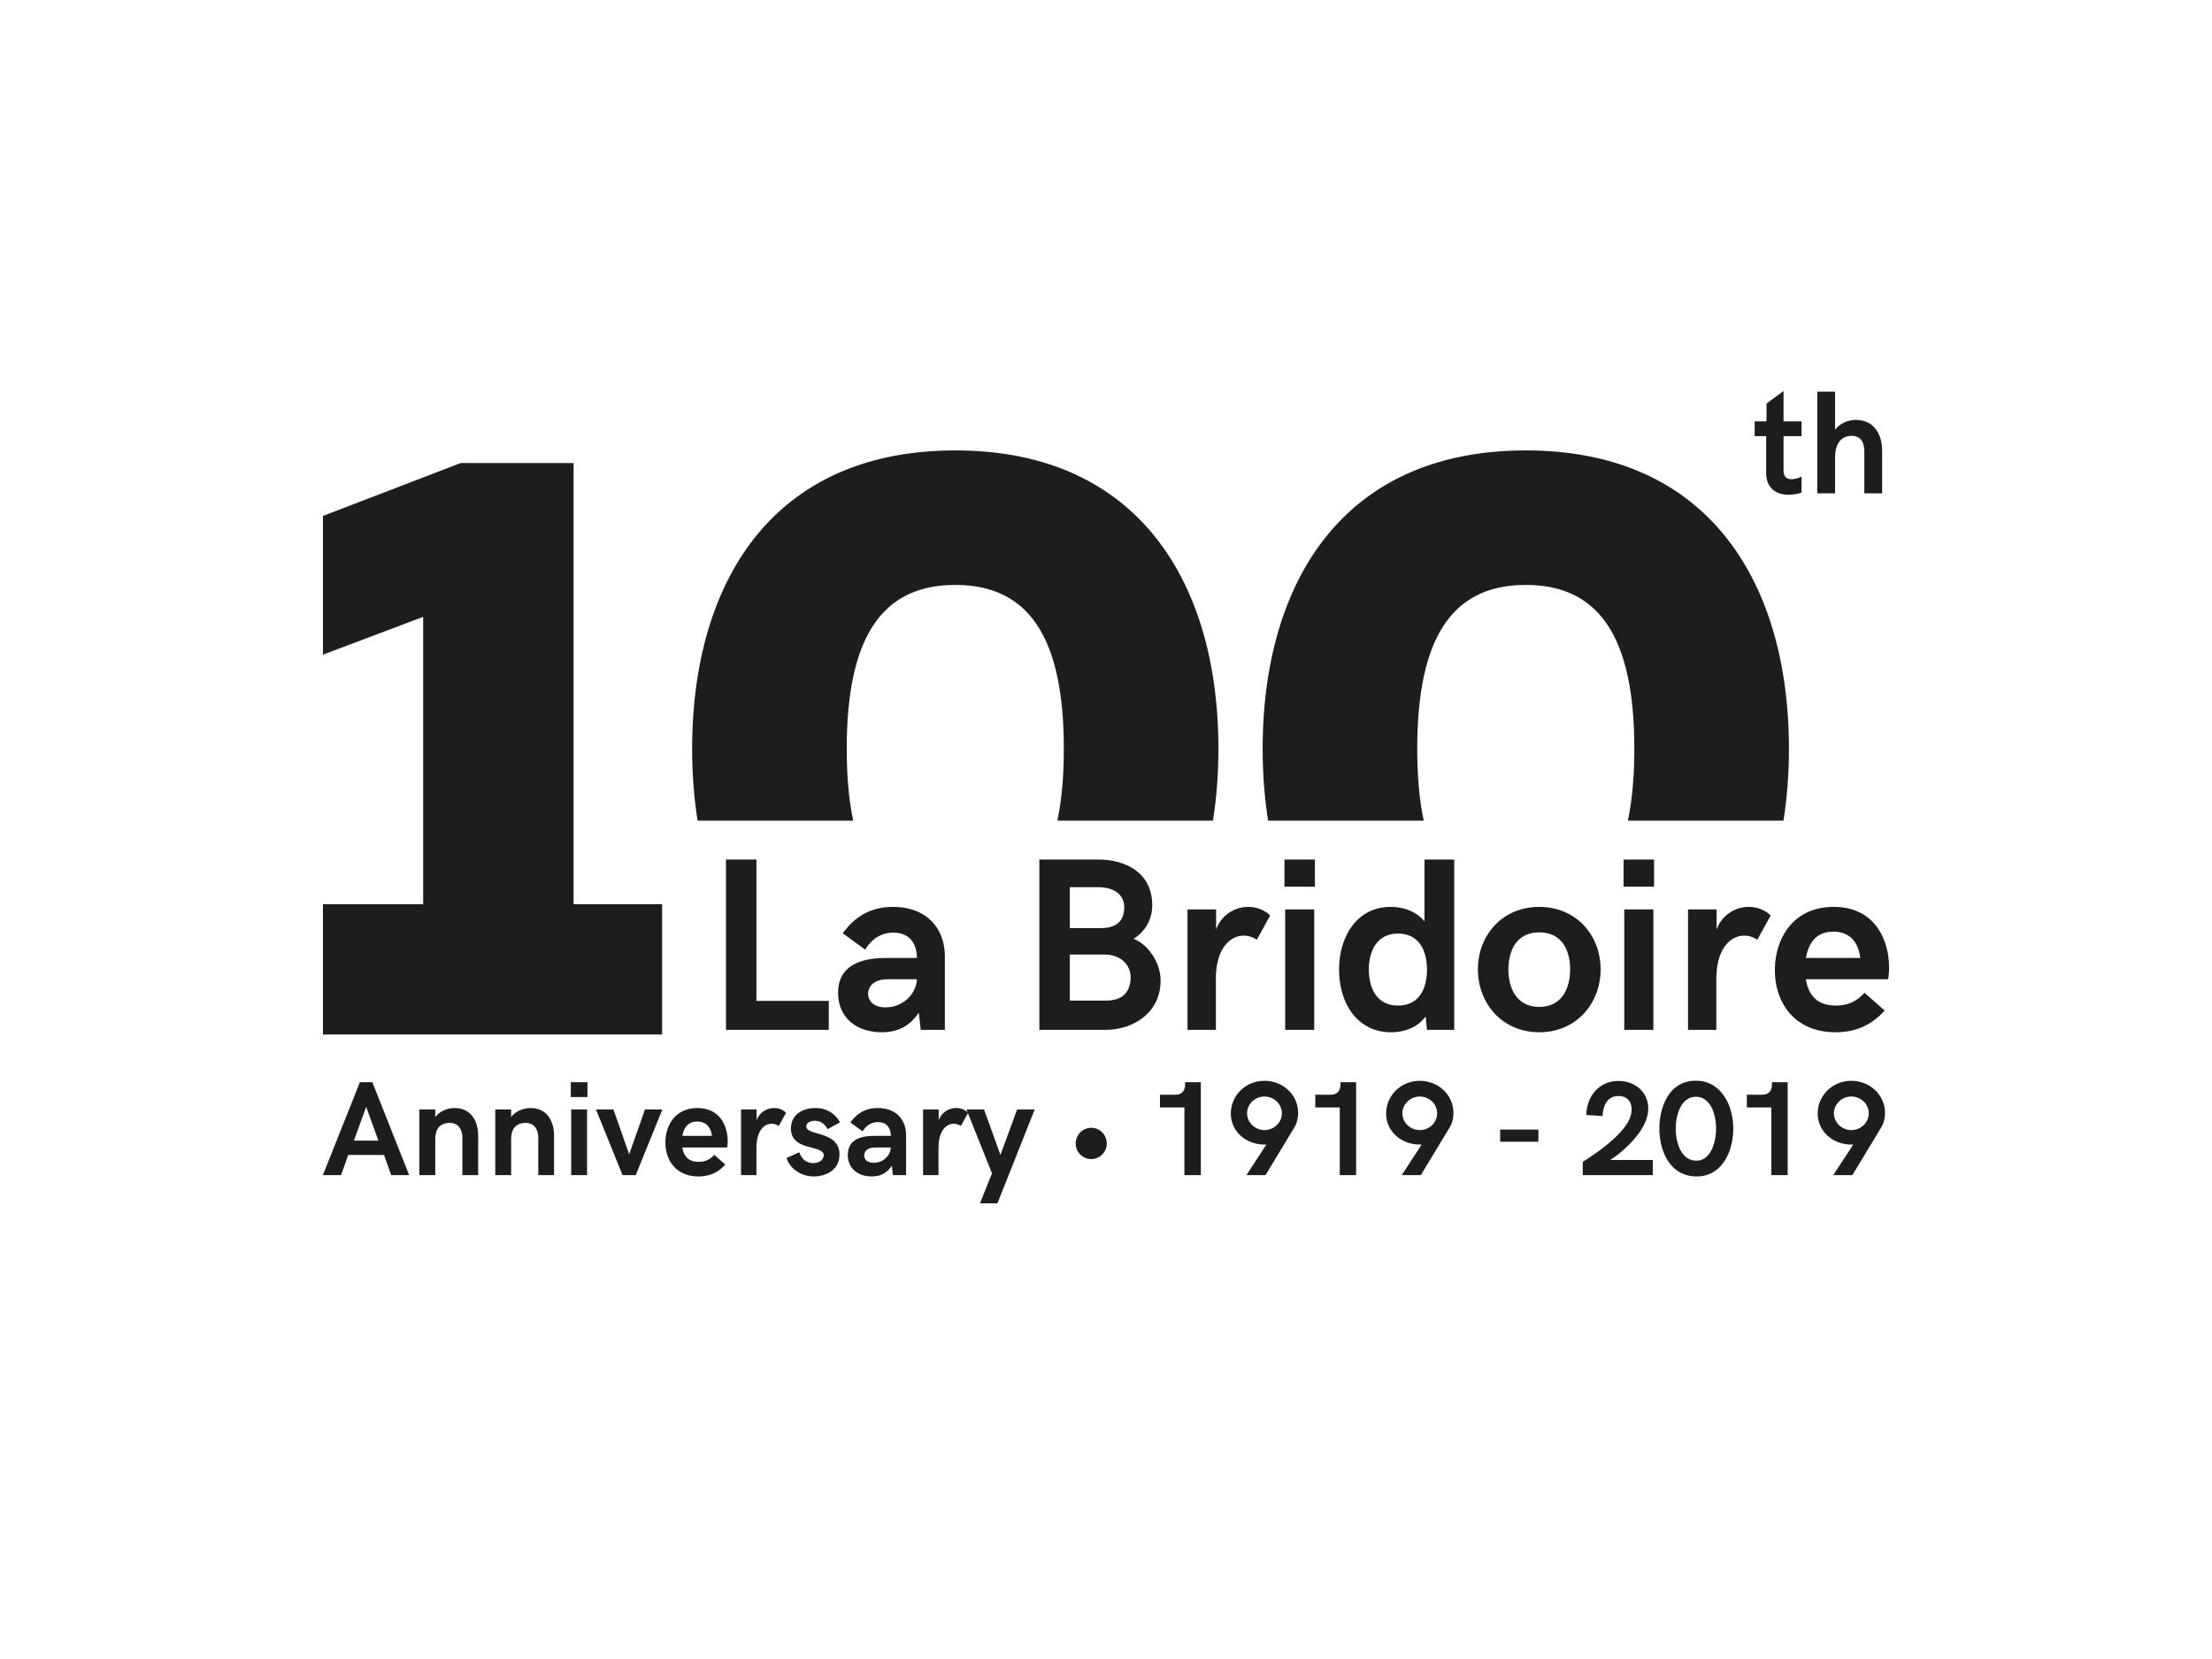 Il plant di La Bridoire festeggia 100 anni di storia